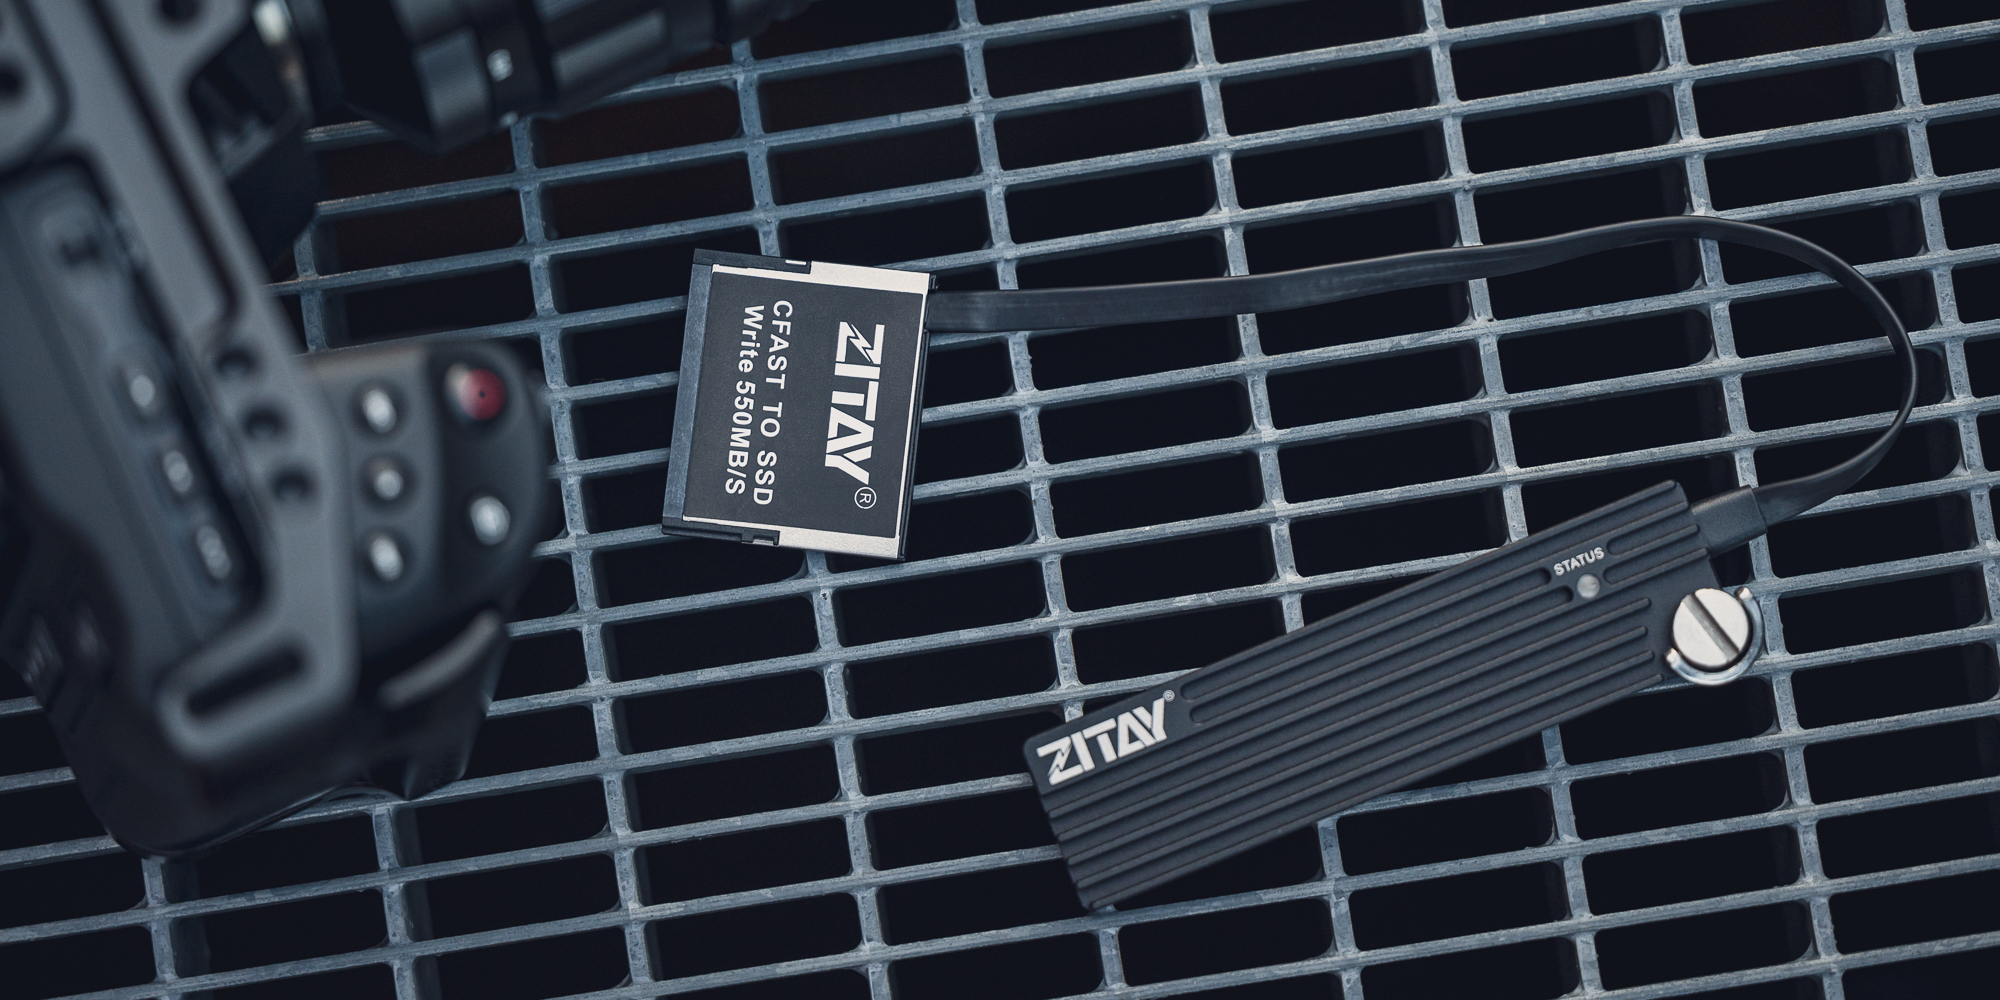 Adapter karty pamięci Zitay CS-302 - CFast 2.0 / M.2 SATA SSD - Ultraszybki zapis danych